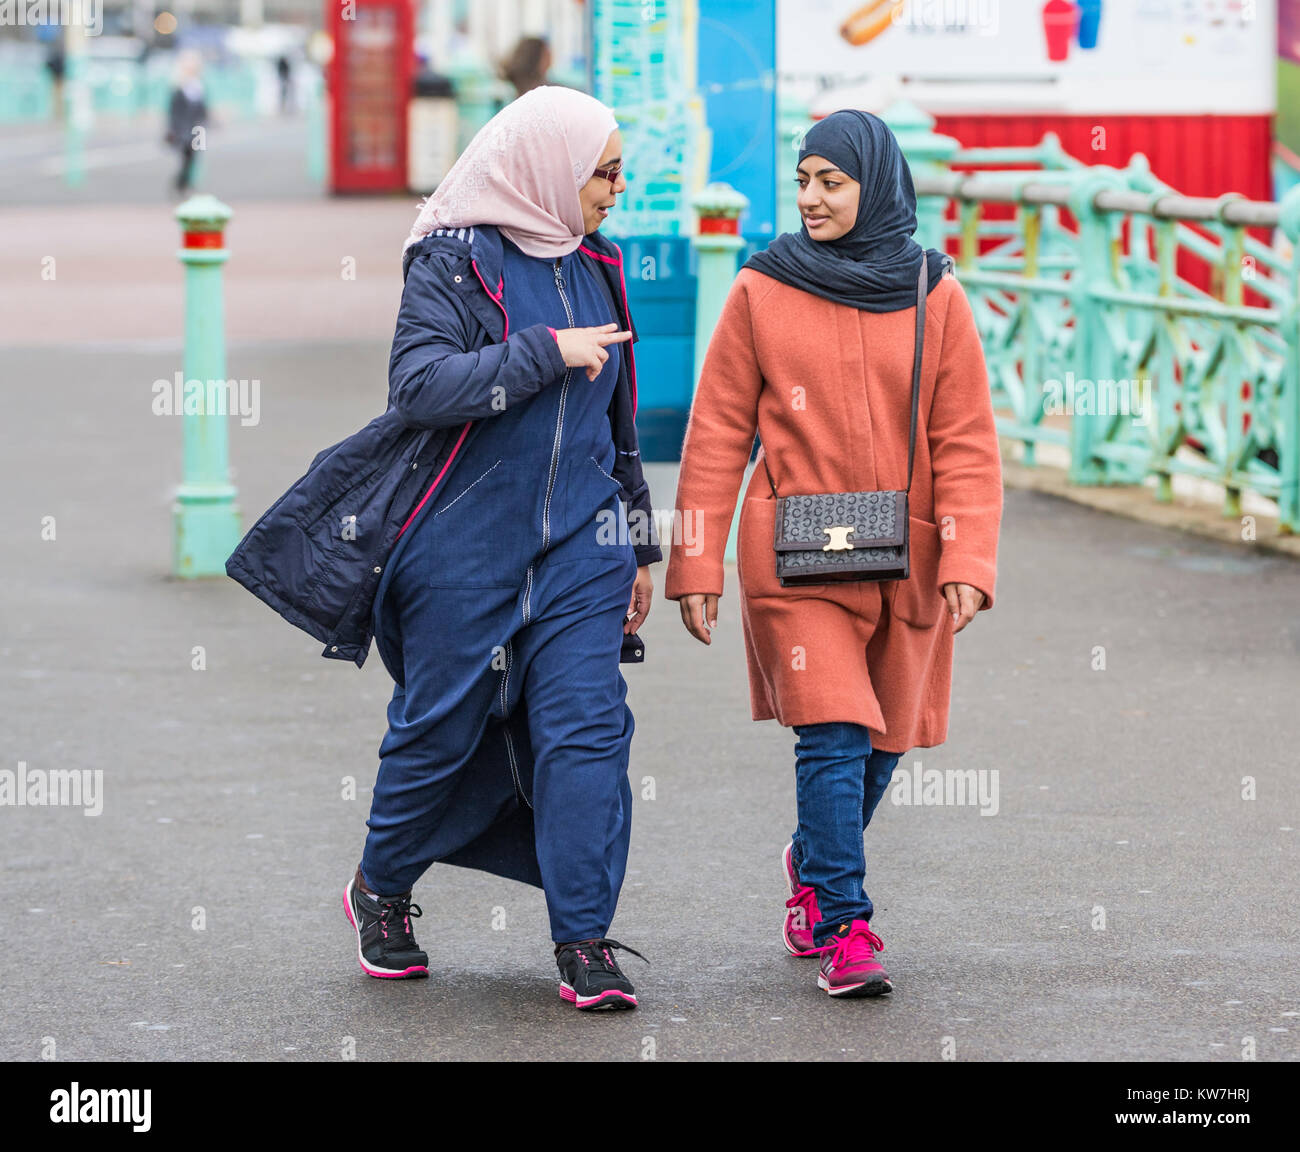 Pareja de mujeres, probablemente musulmana debido a la ropa, usando un hijab caminando mientras habla en Brighton, East Sussex, Inglaterra, Reino Unido. Foto de stock